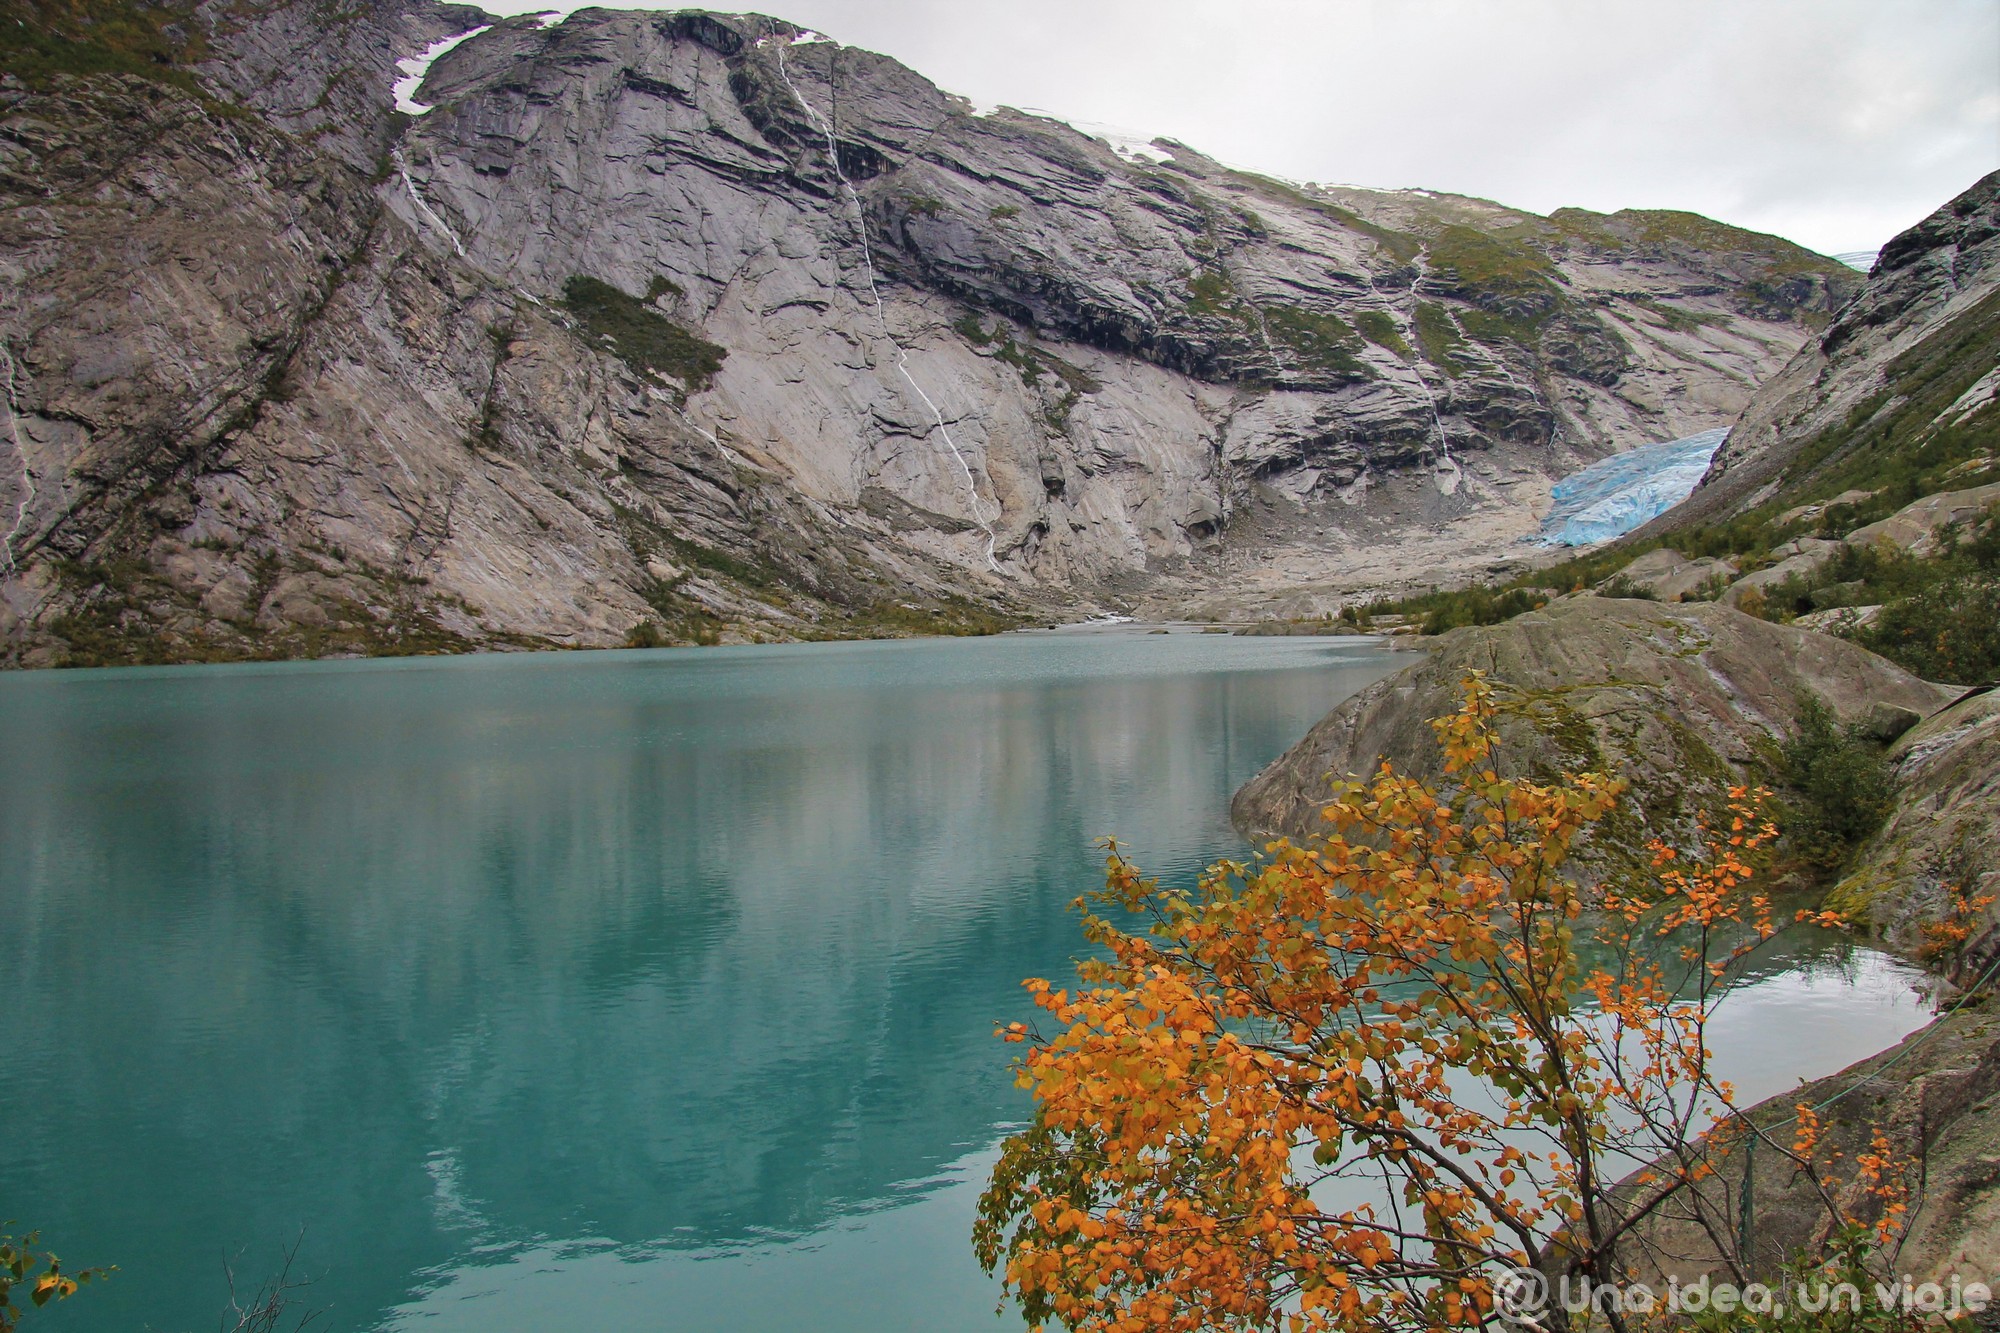 noruega-que-como-cuando-visitar-trekking-glaciar-jostedal-unaideaunviaje-11